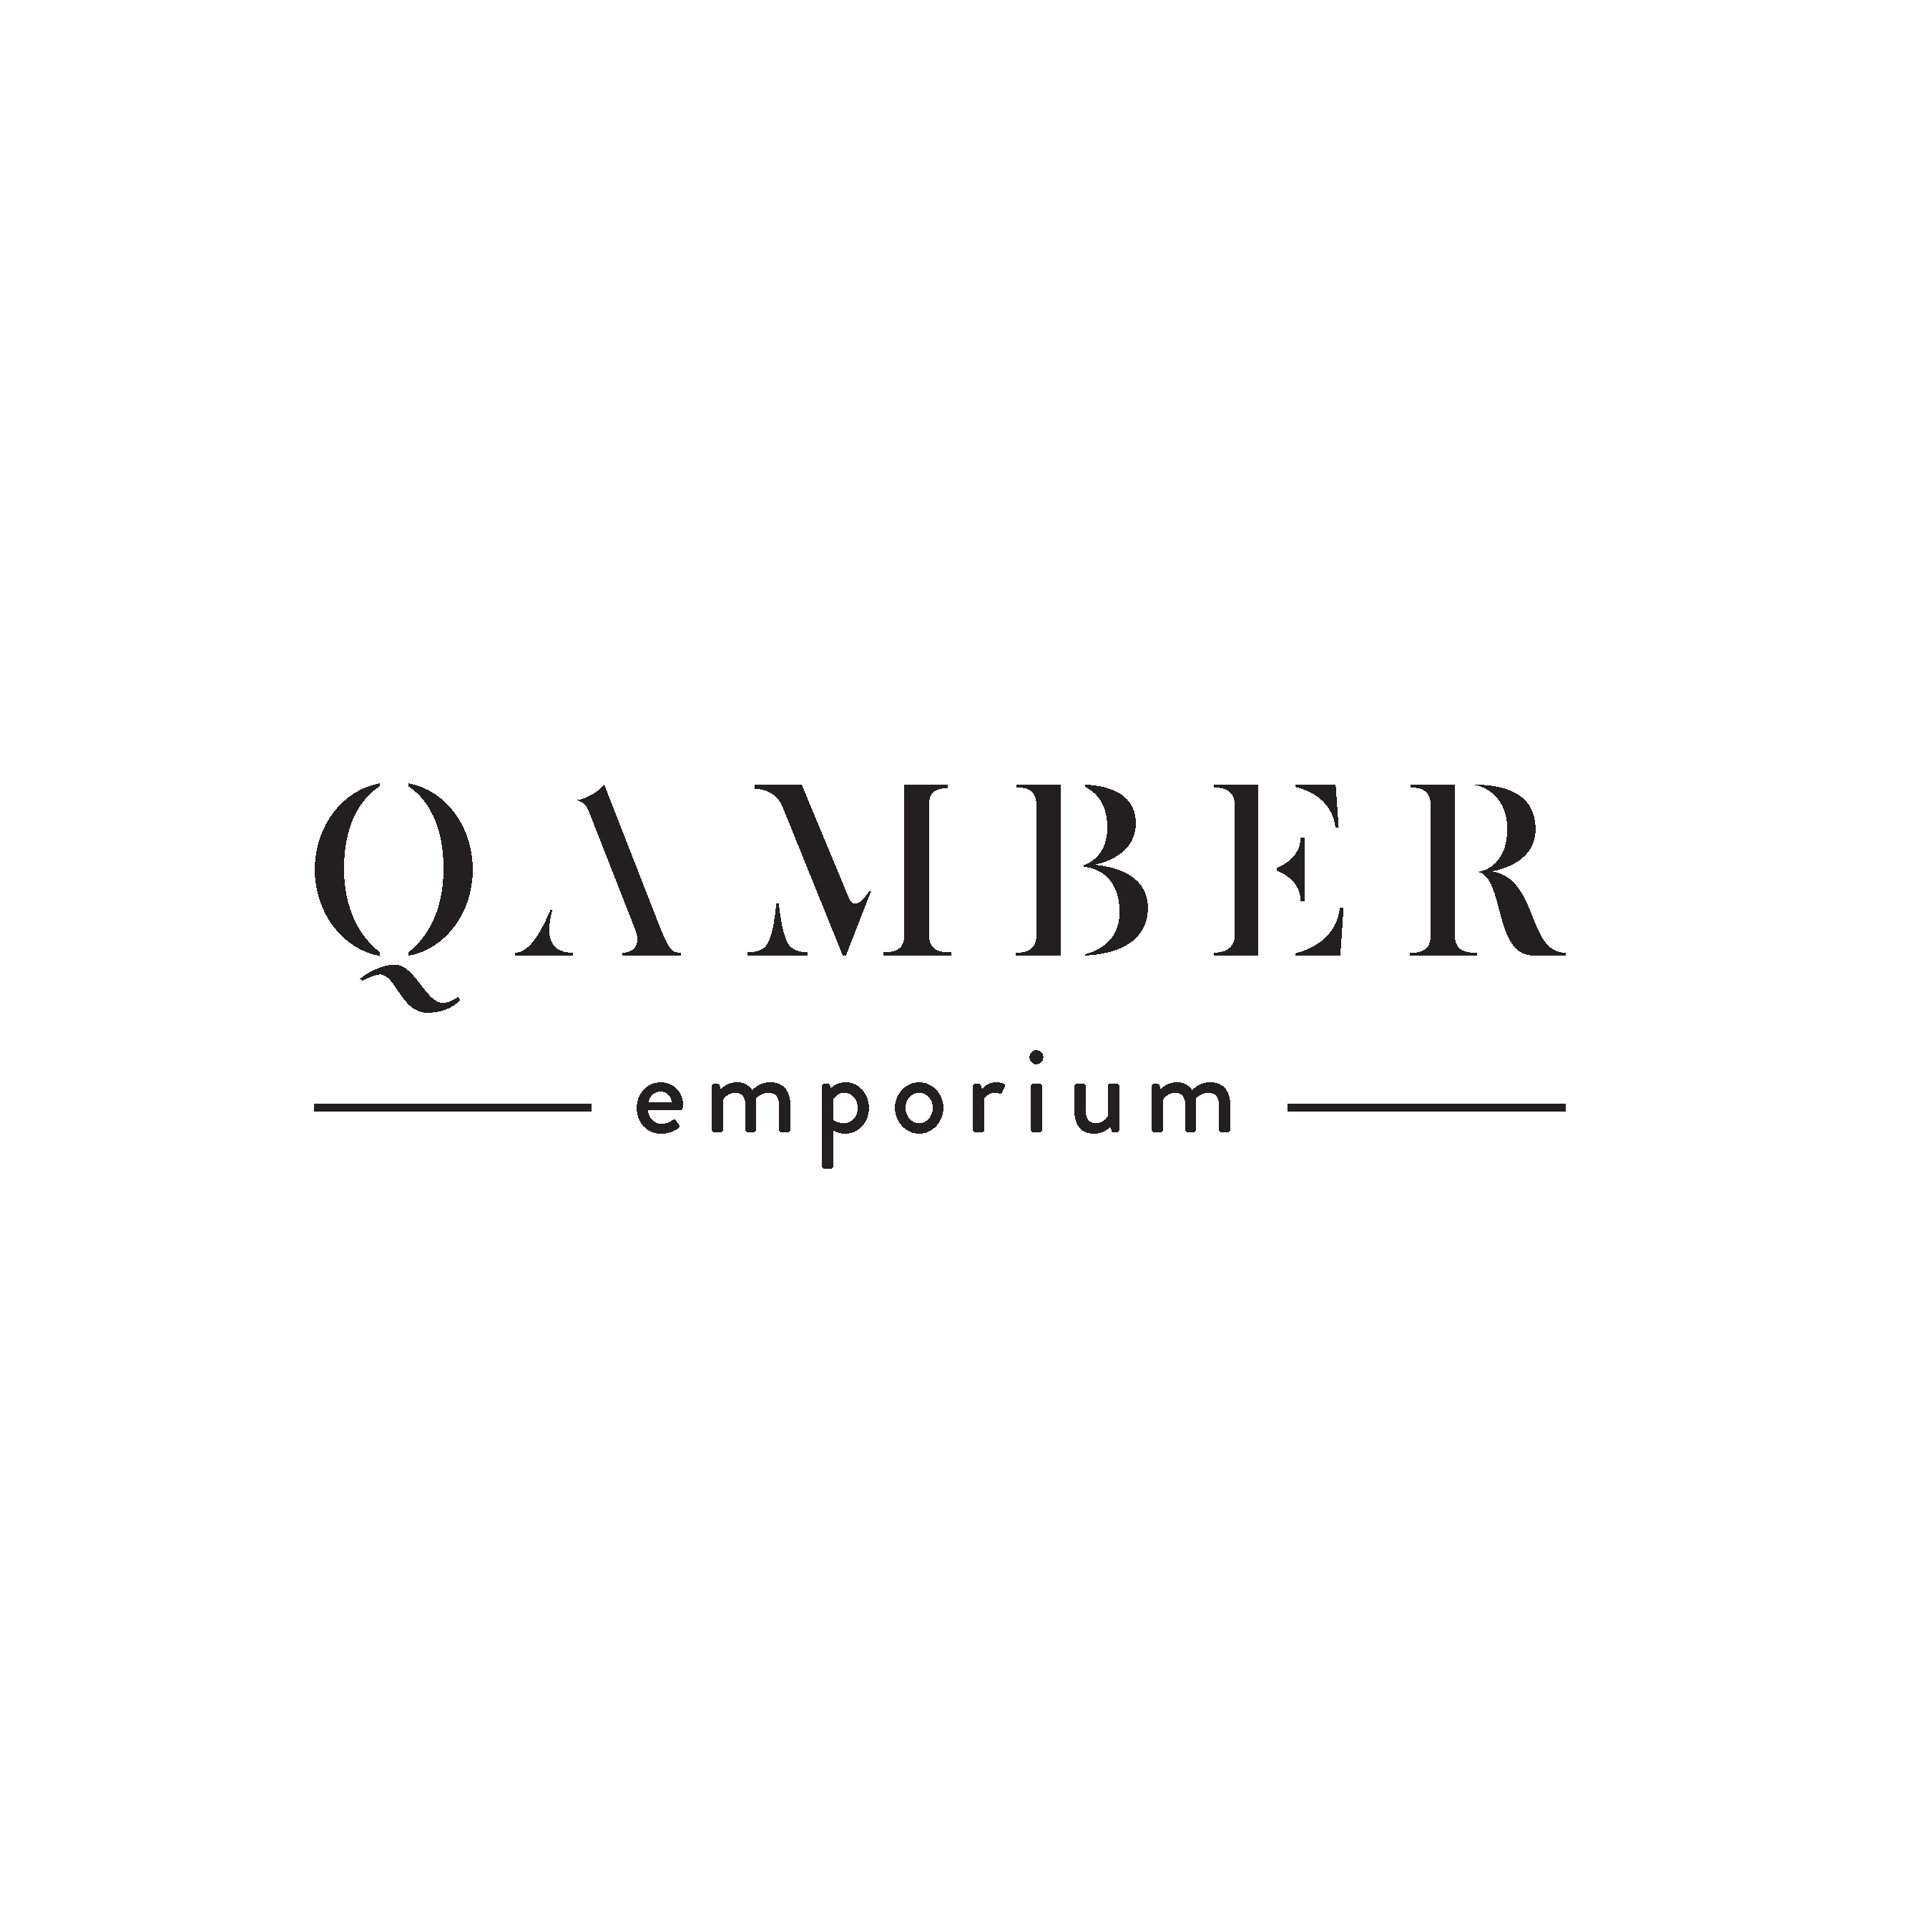 Qamber emporium